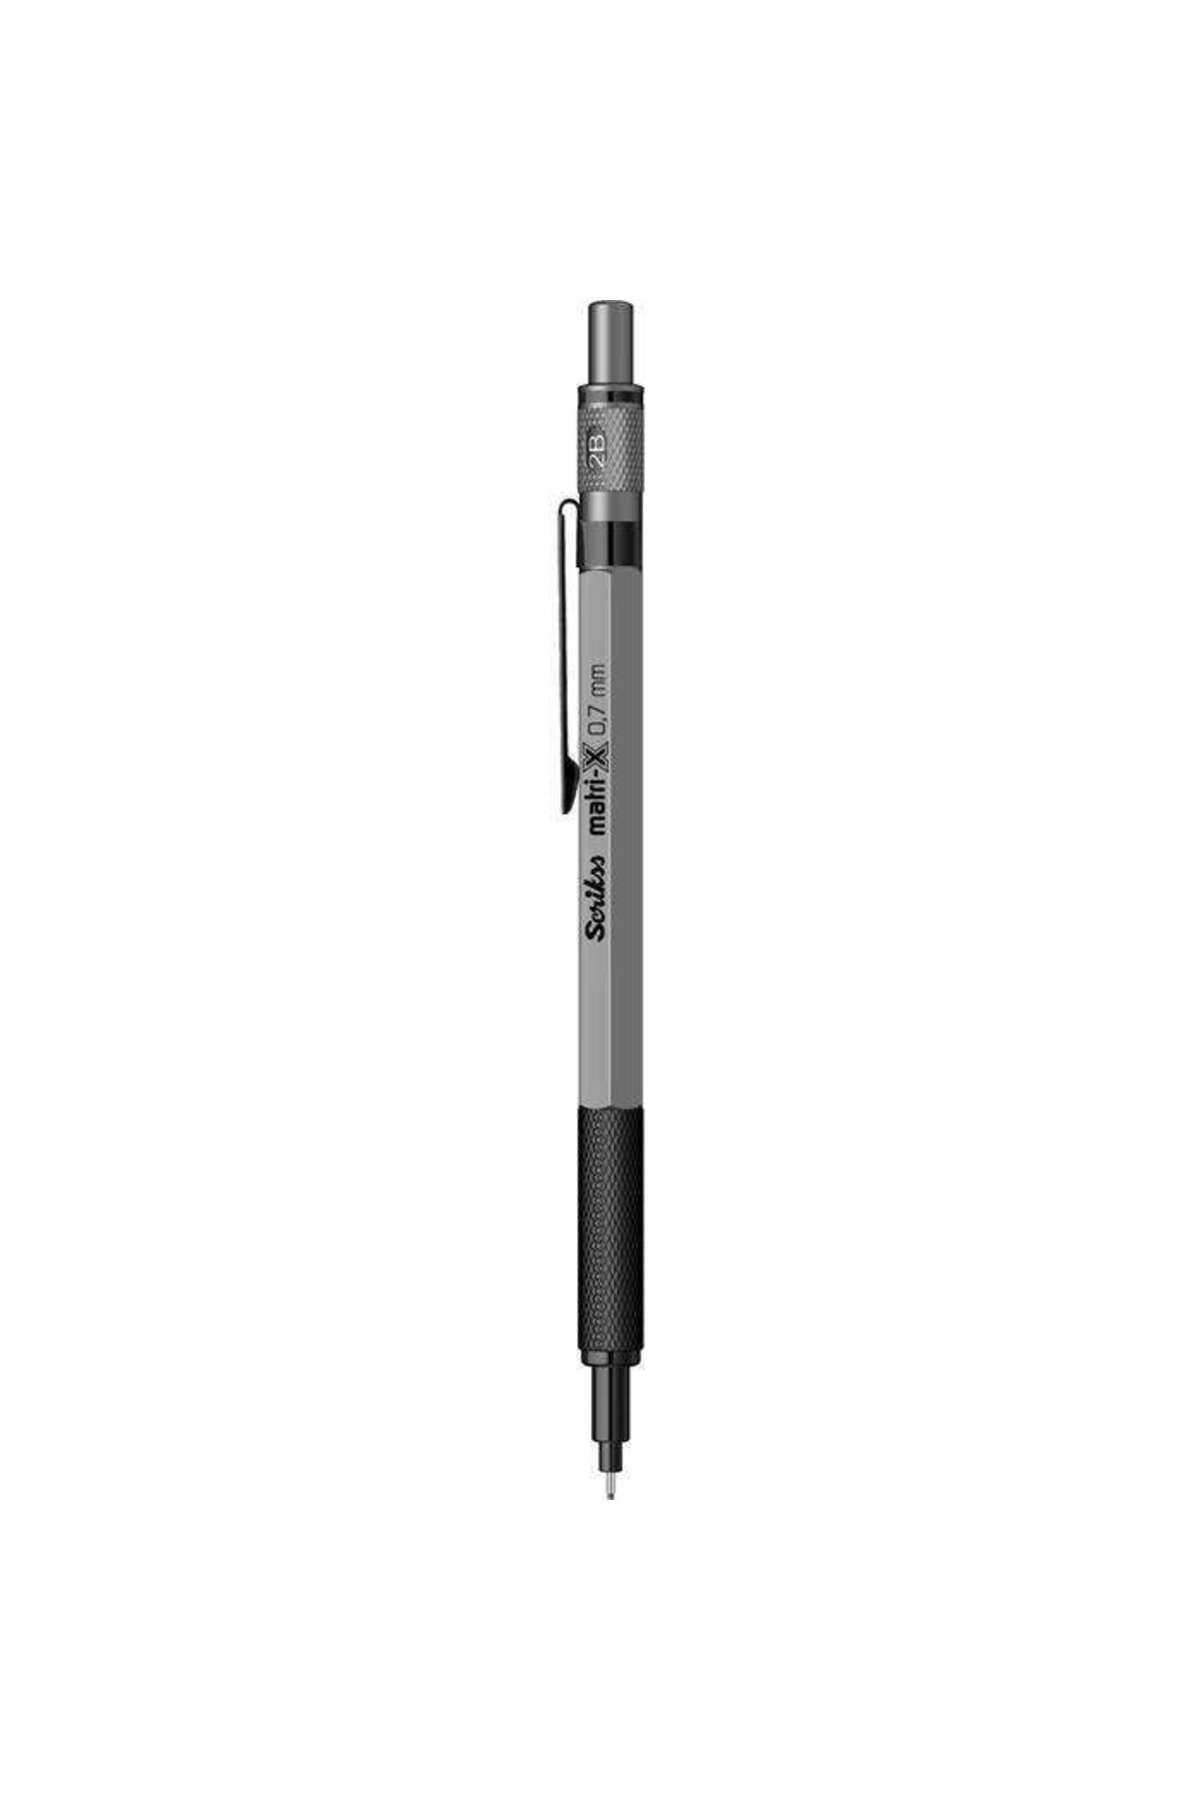 Scrikss Matri-x Mekanik Kurşun Kalem 0,7mm Gri